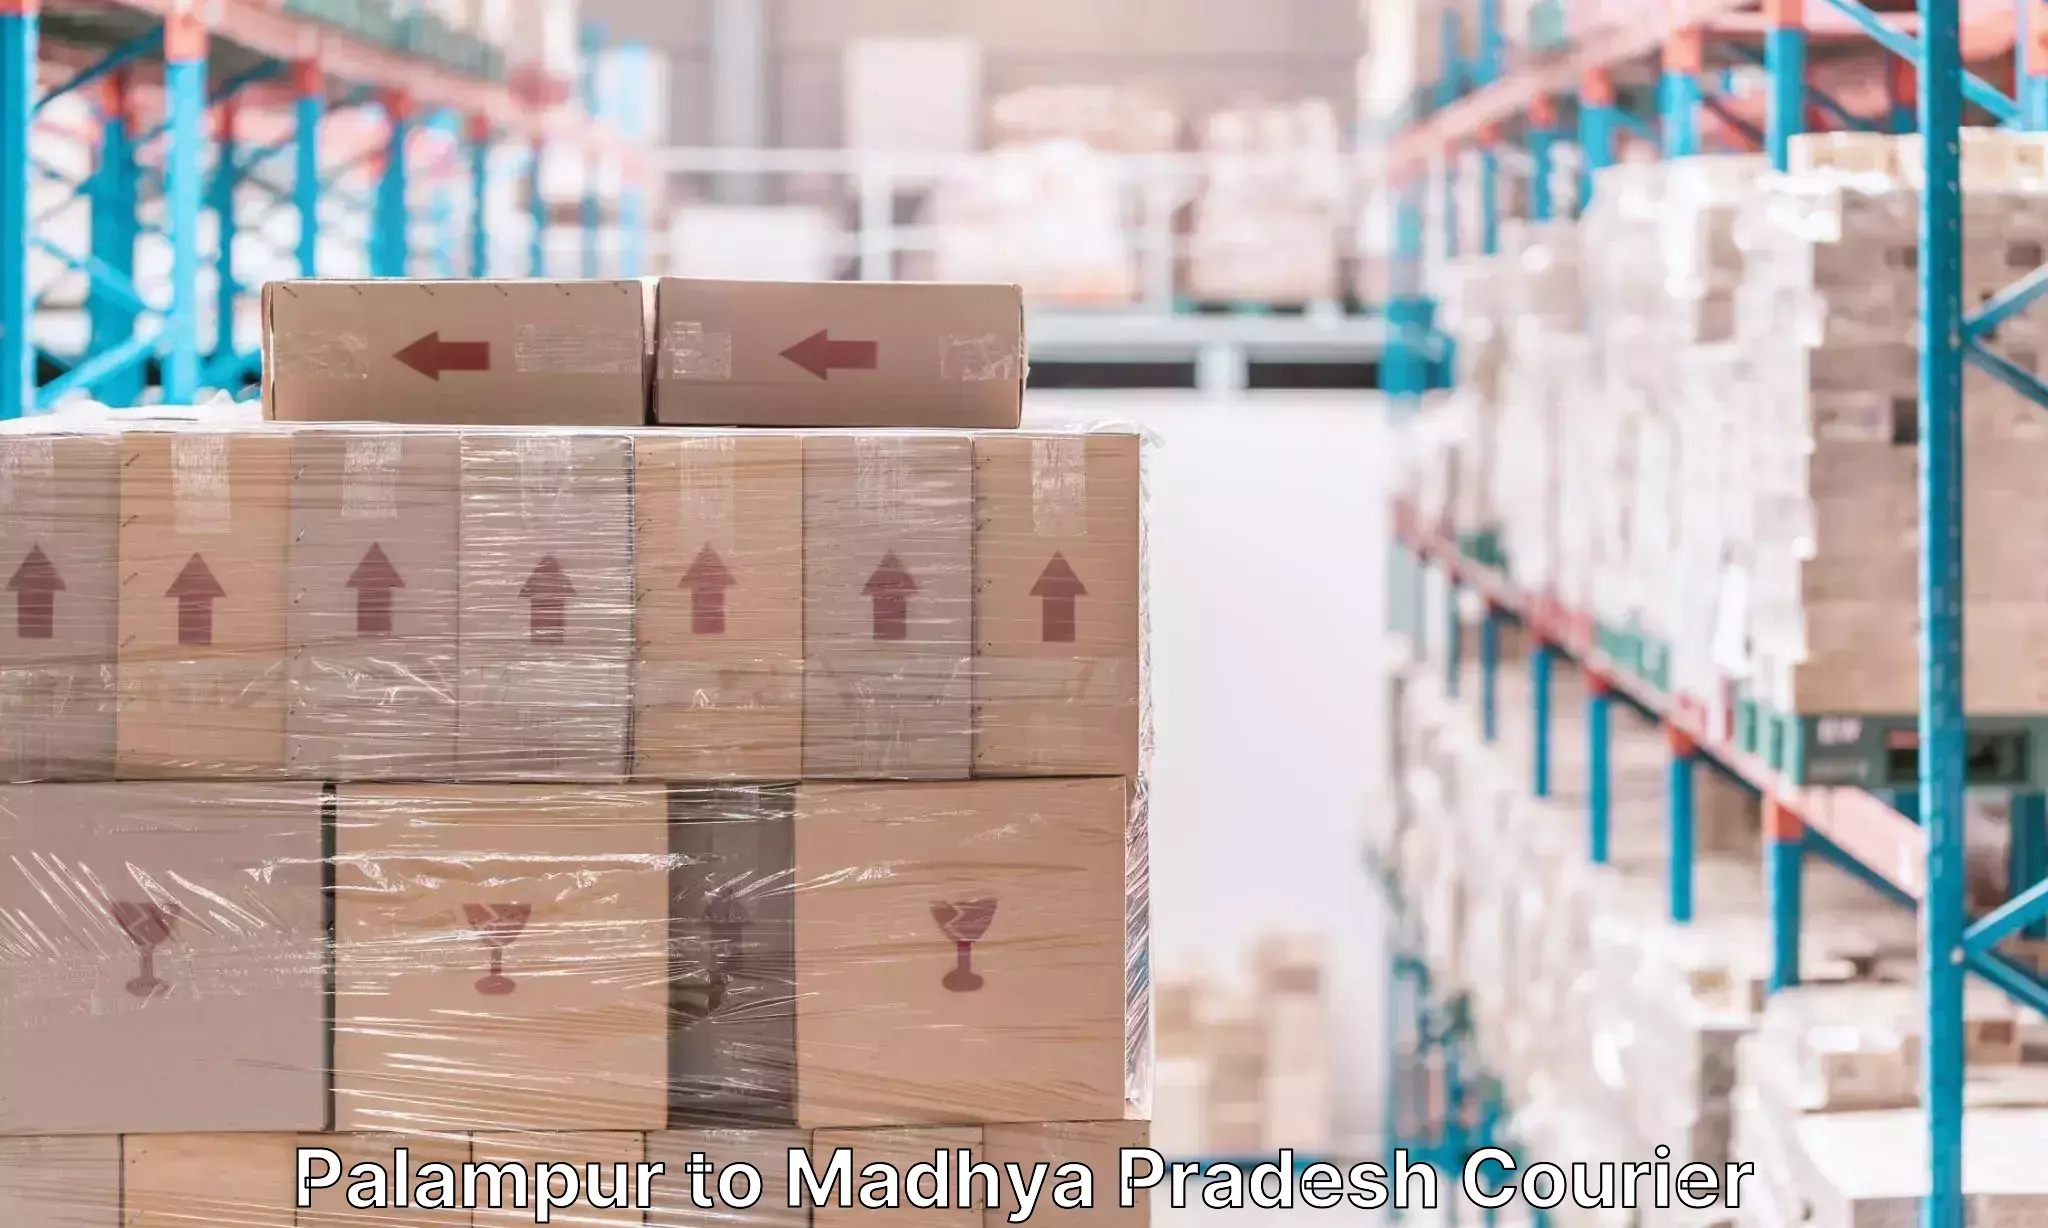 Baggage shipping experts Palampur to Mandideep